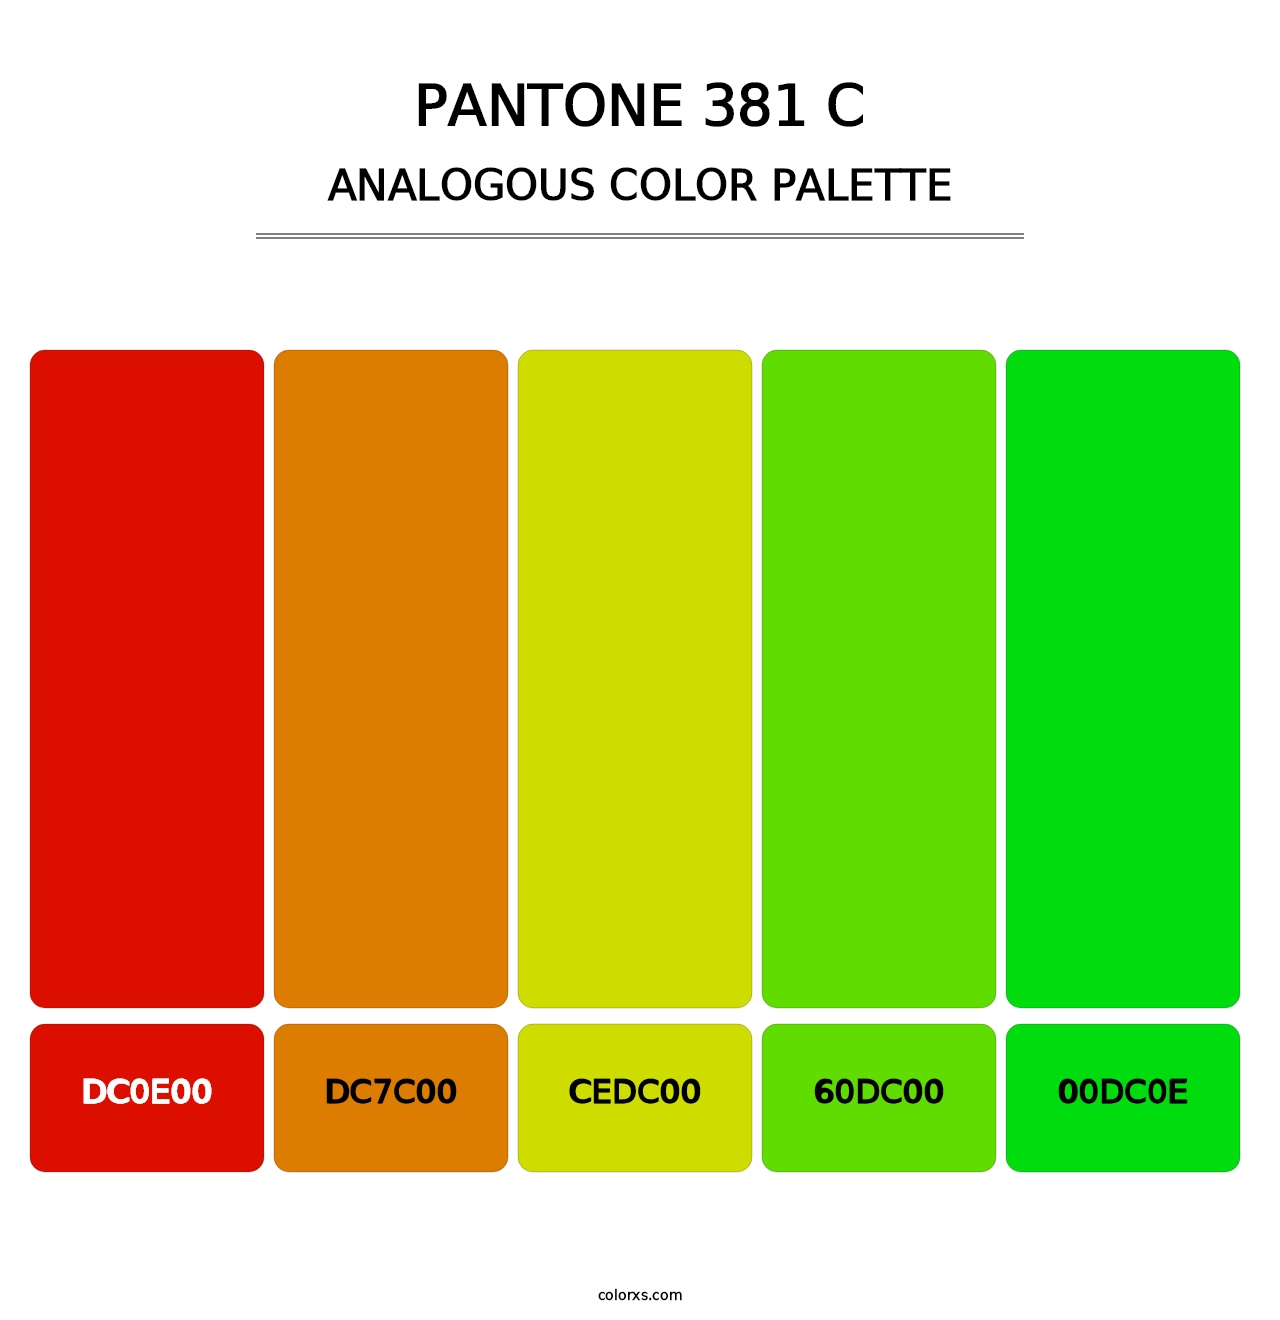 PANTONE 381 C - Analogous Color Palette